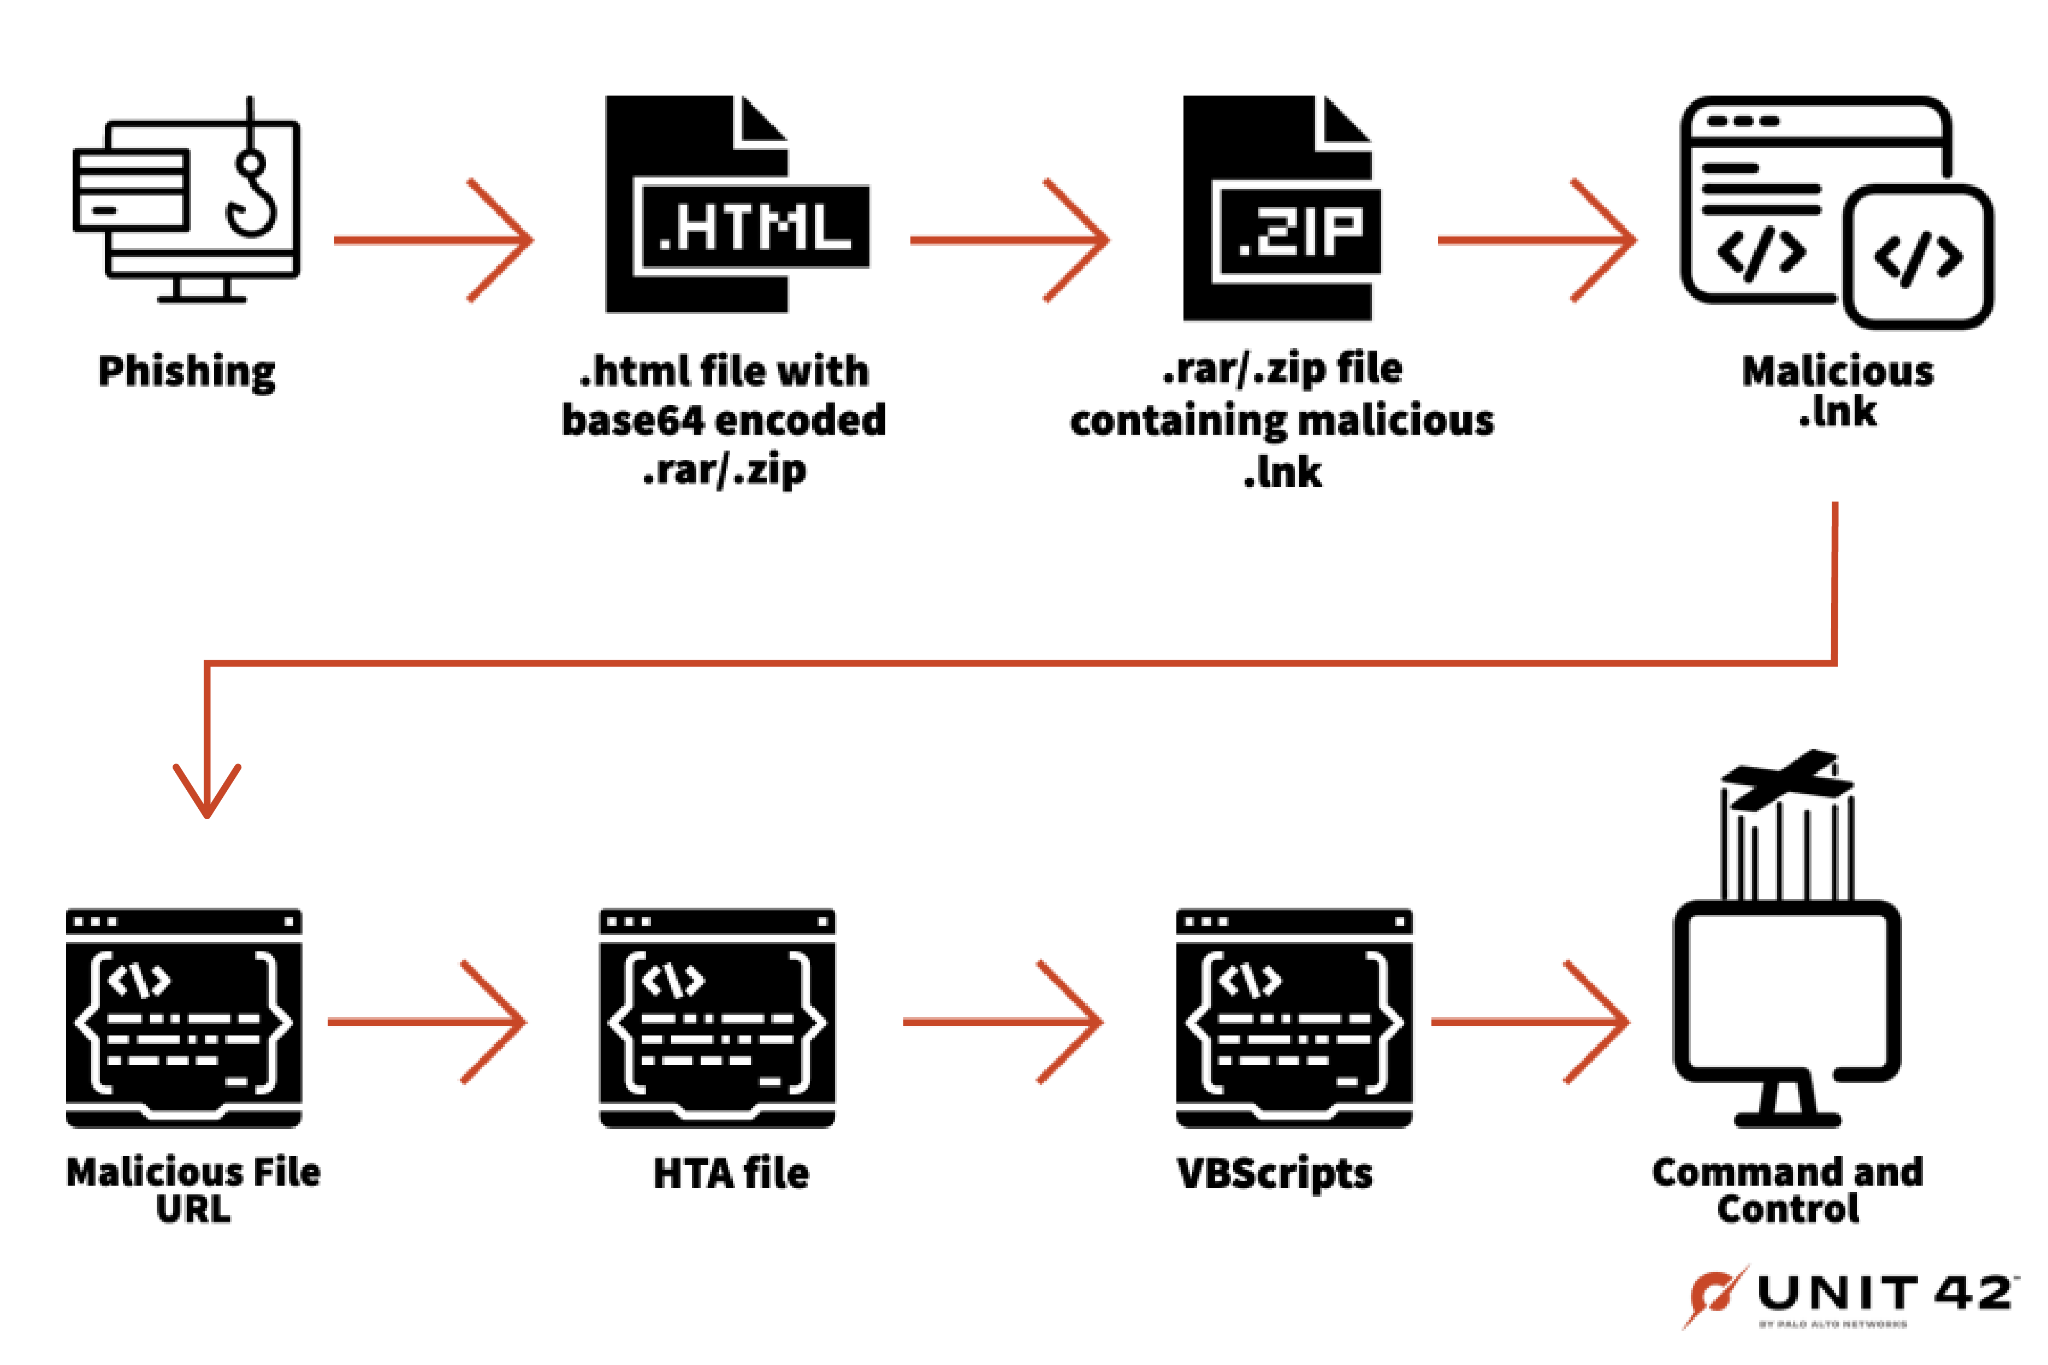 La Imagen 7 es un diagrama que muestra la ruta de explotación para el phishing usando archivos .lnk maliciosos. Comienza con phishing y termina con VBScripts.